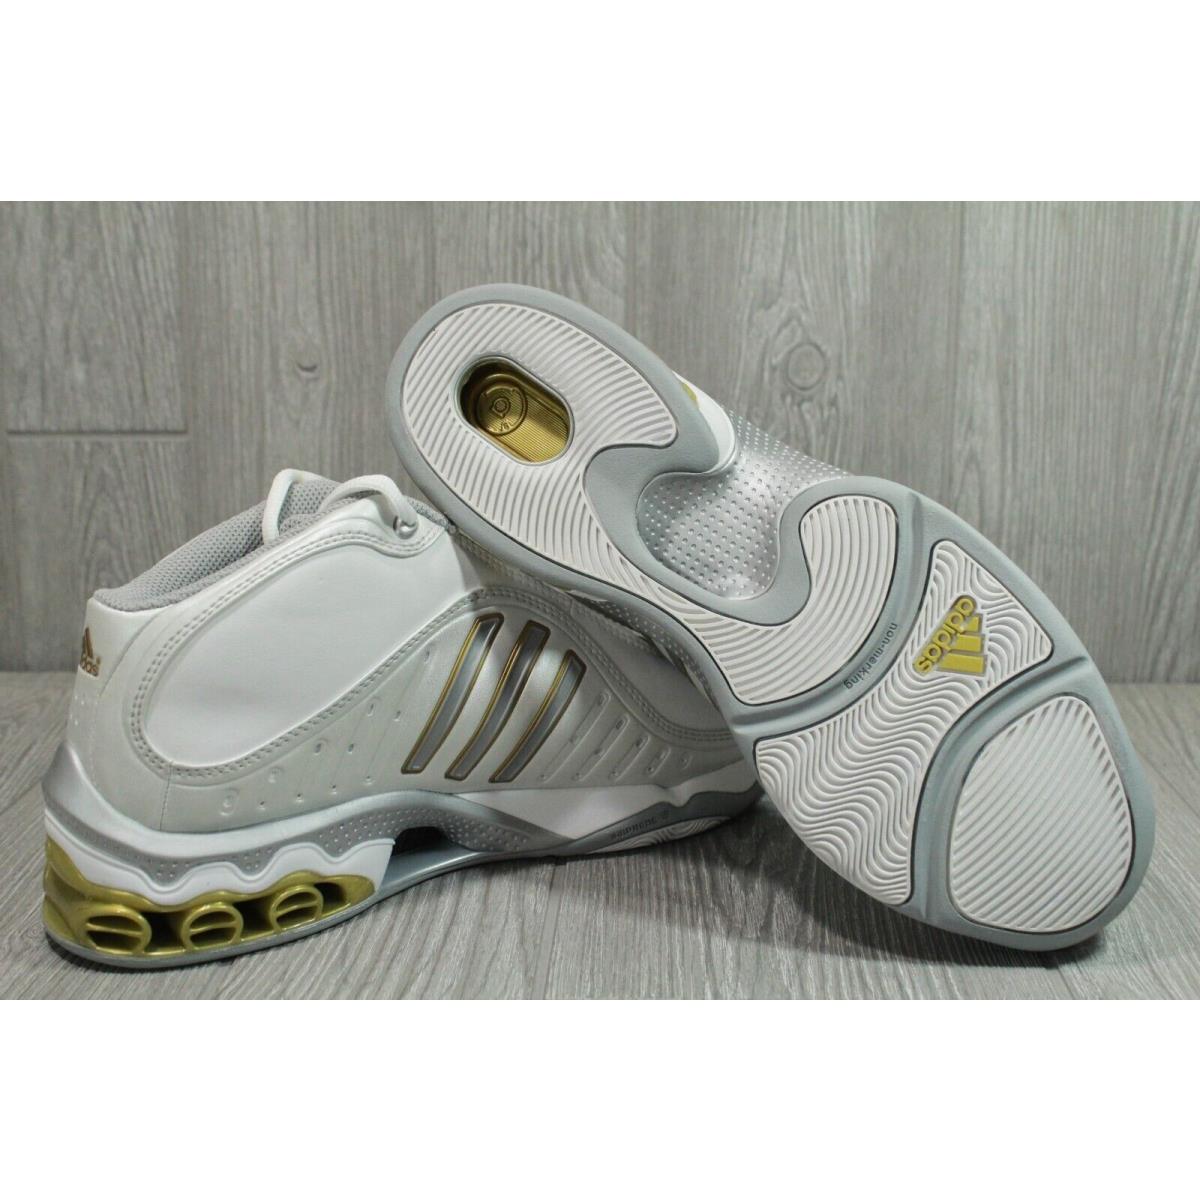 Adidas shoes Cub - White 4